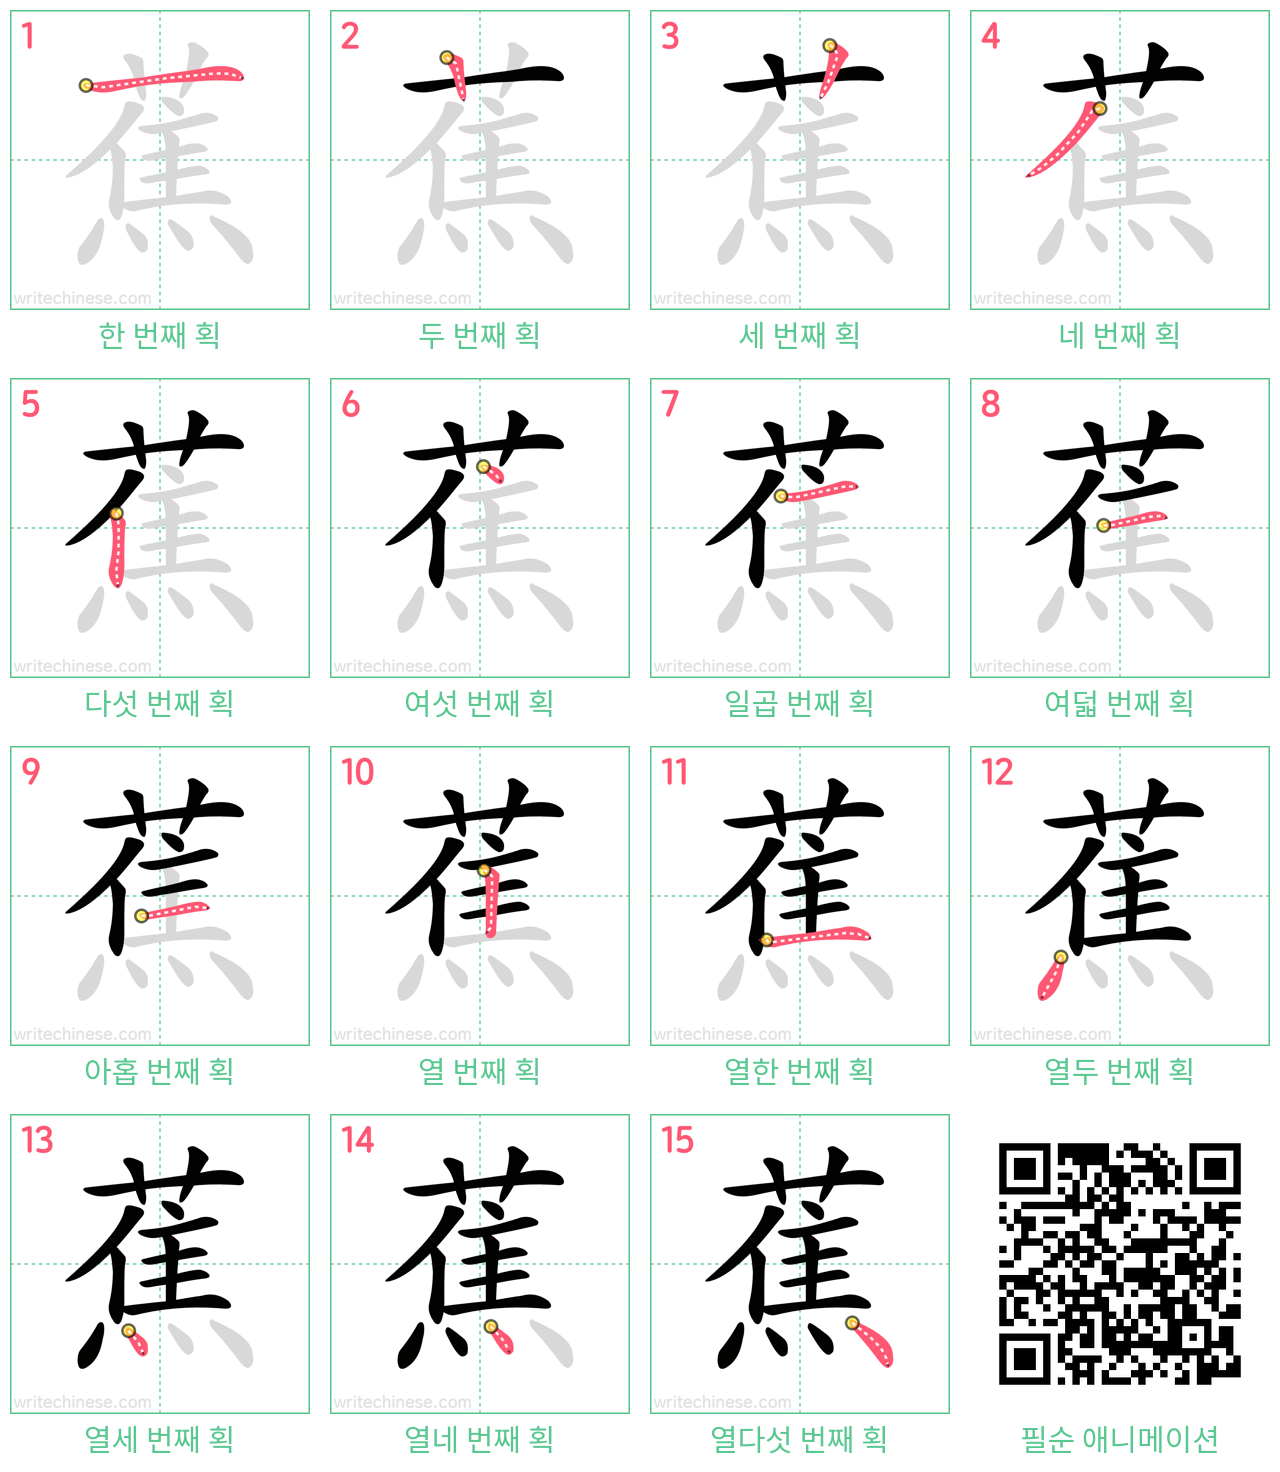 蕉 step-by-step stroke order diagrams